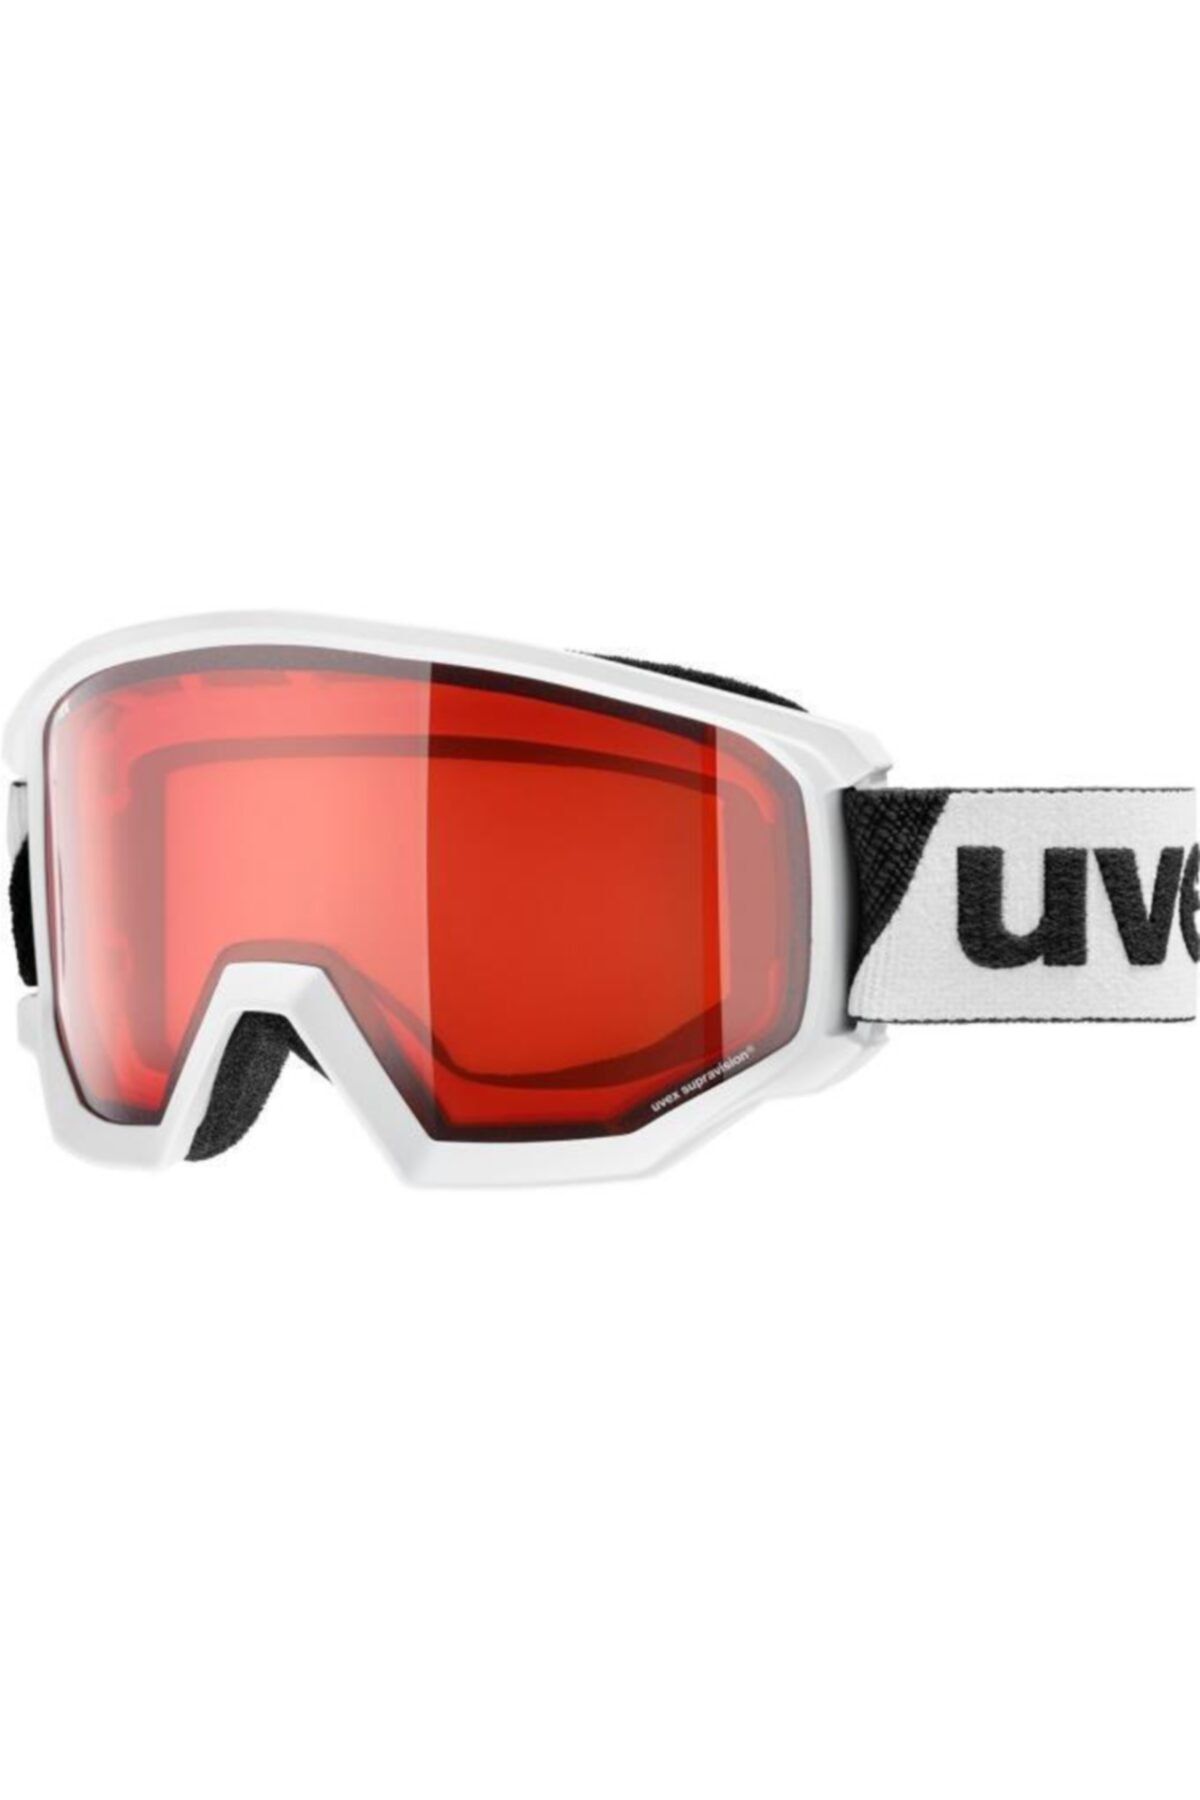 Uvex Athletic Lgl Beyaz/pembe Kayak Gözlüğü